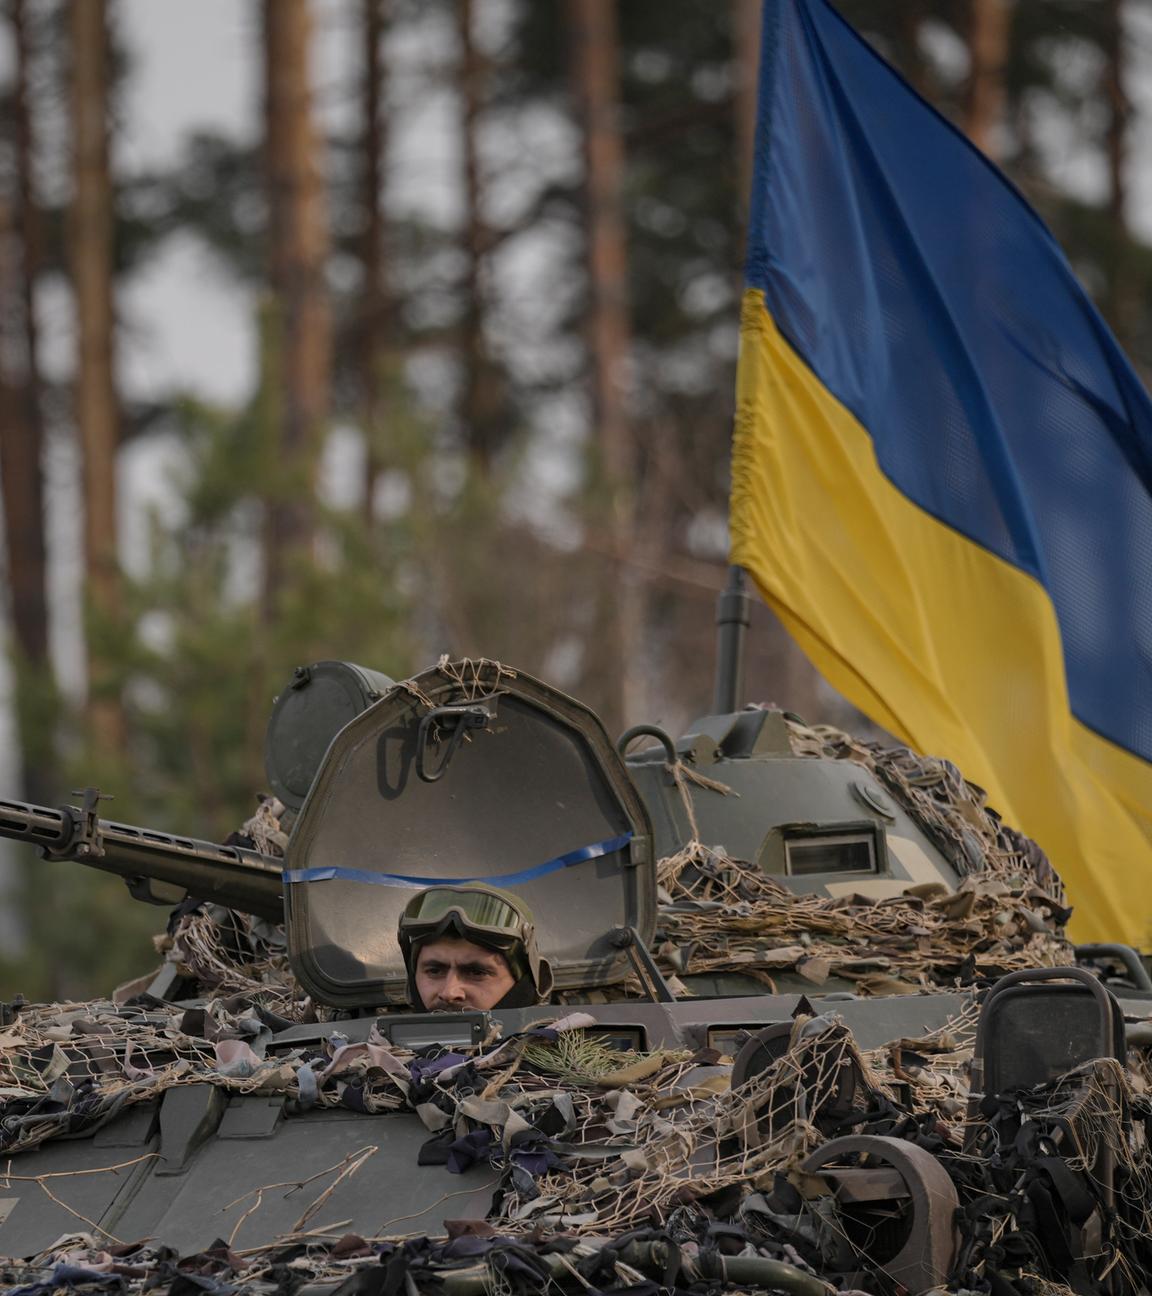 Ukrainischer Panzer an dem eine ukrainische Flagge hängt